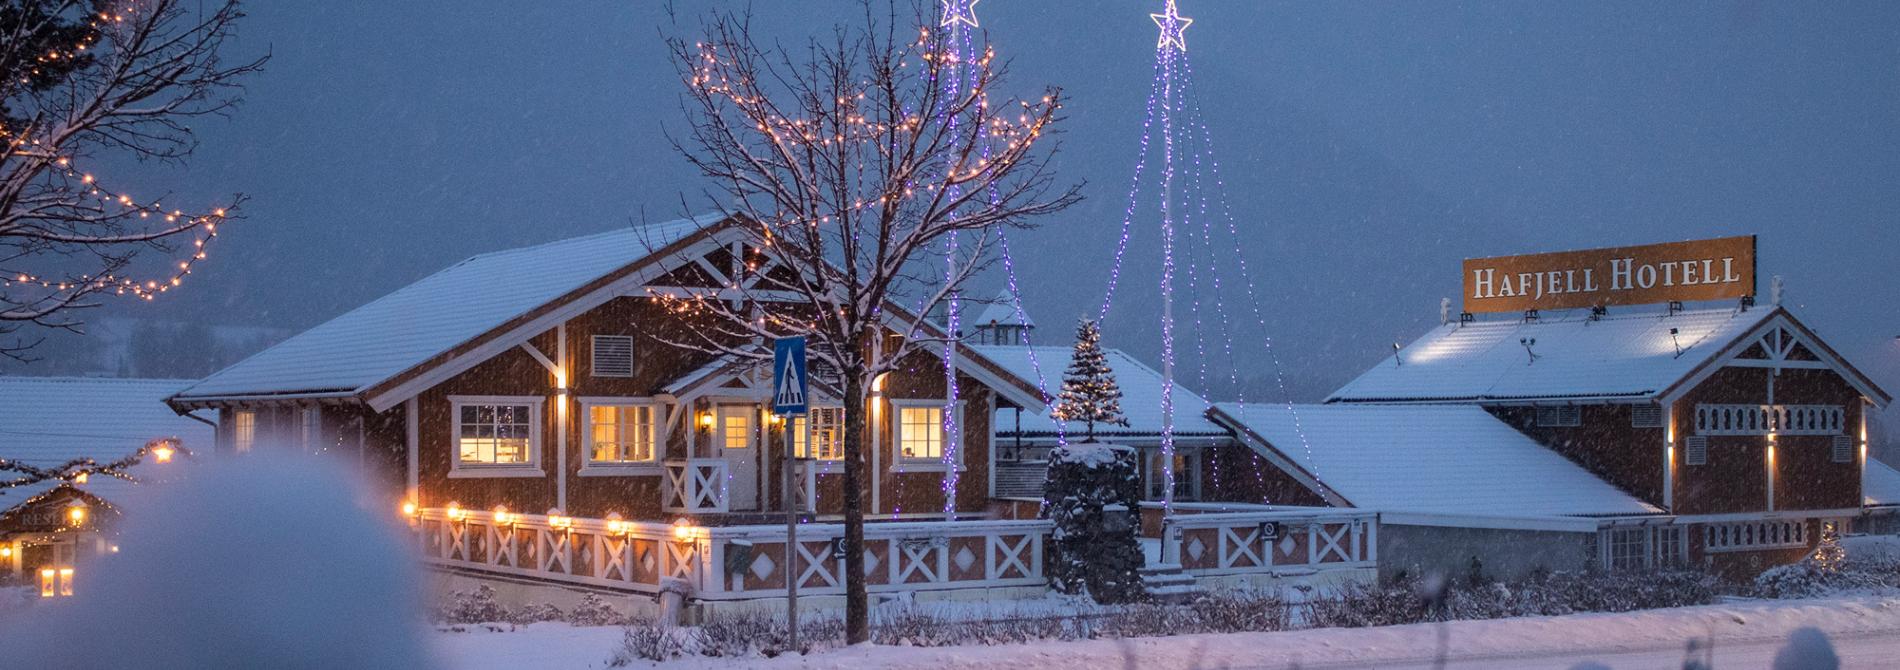 Hvit jul på Hafjell hotell